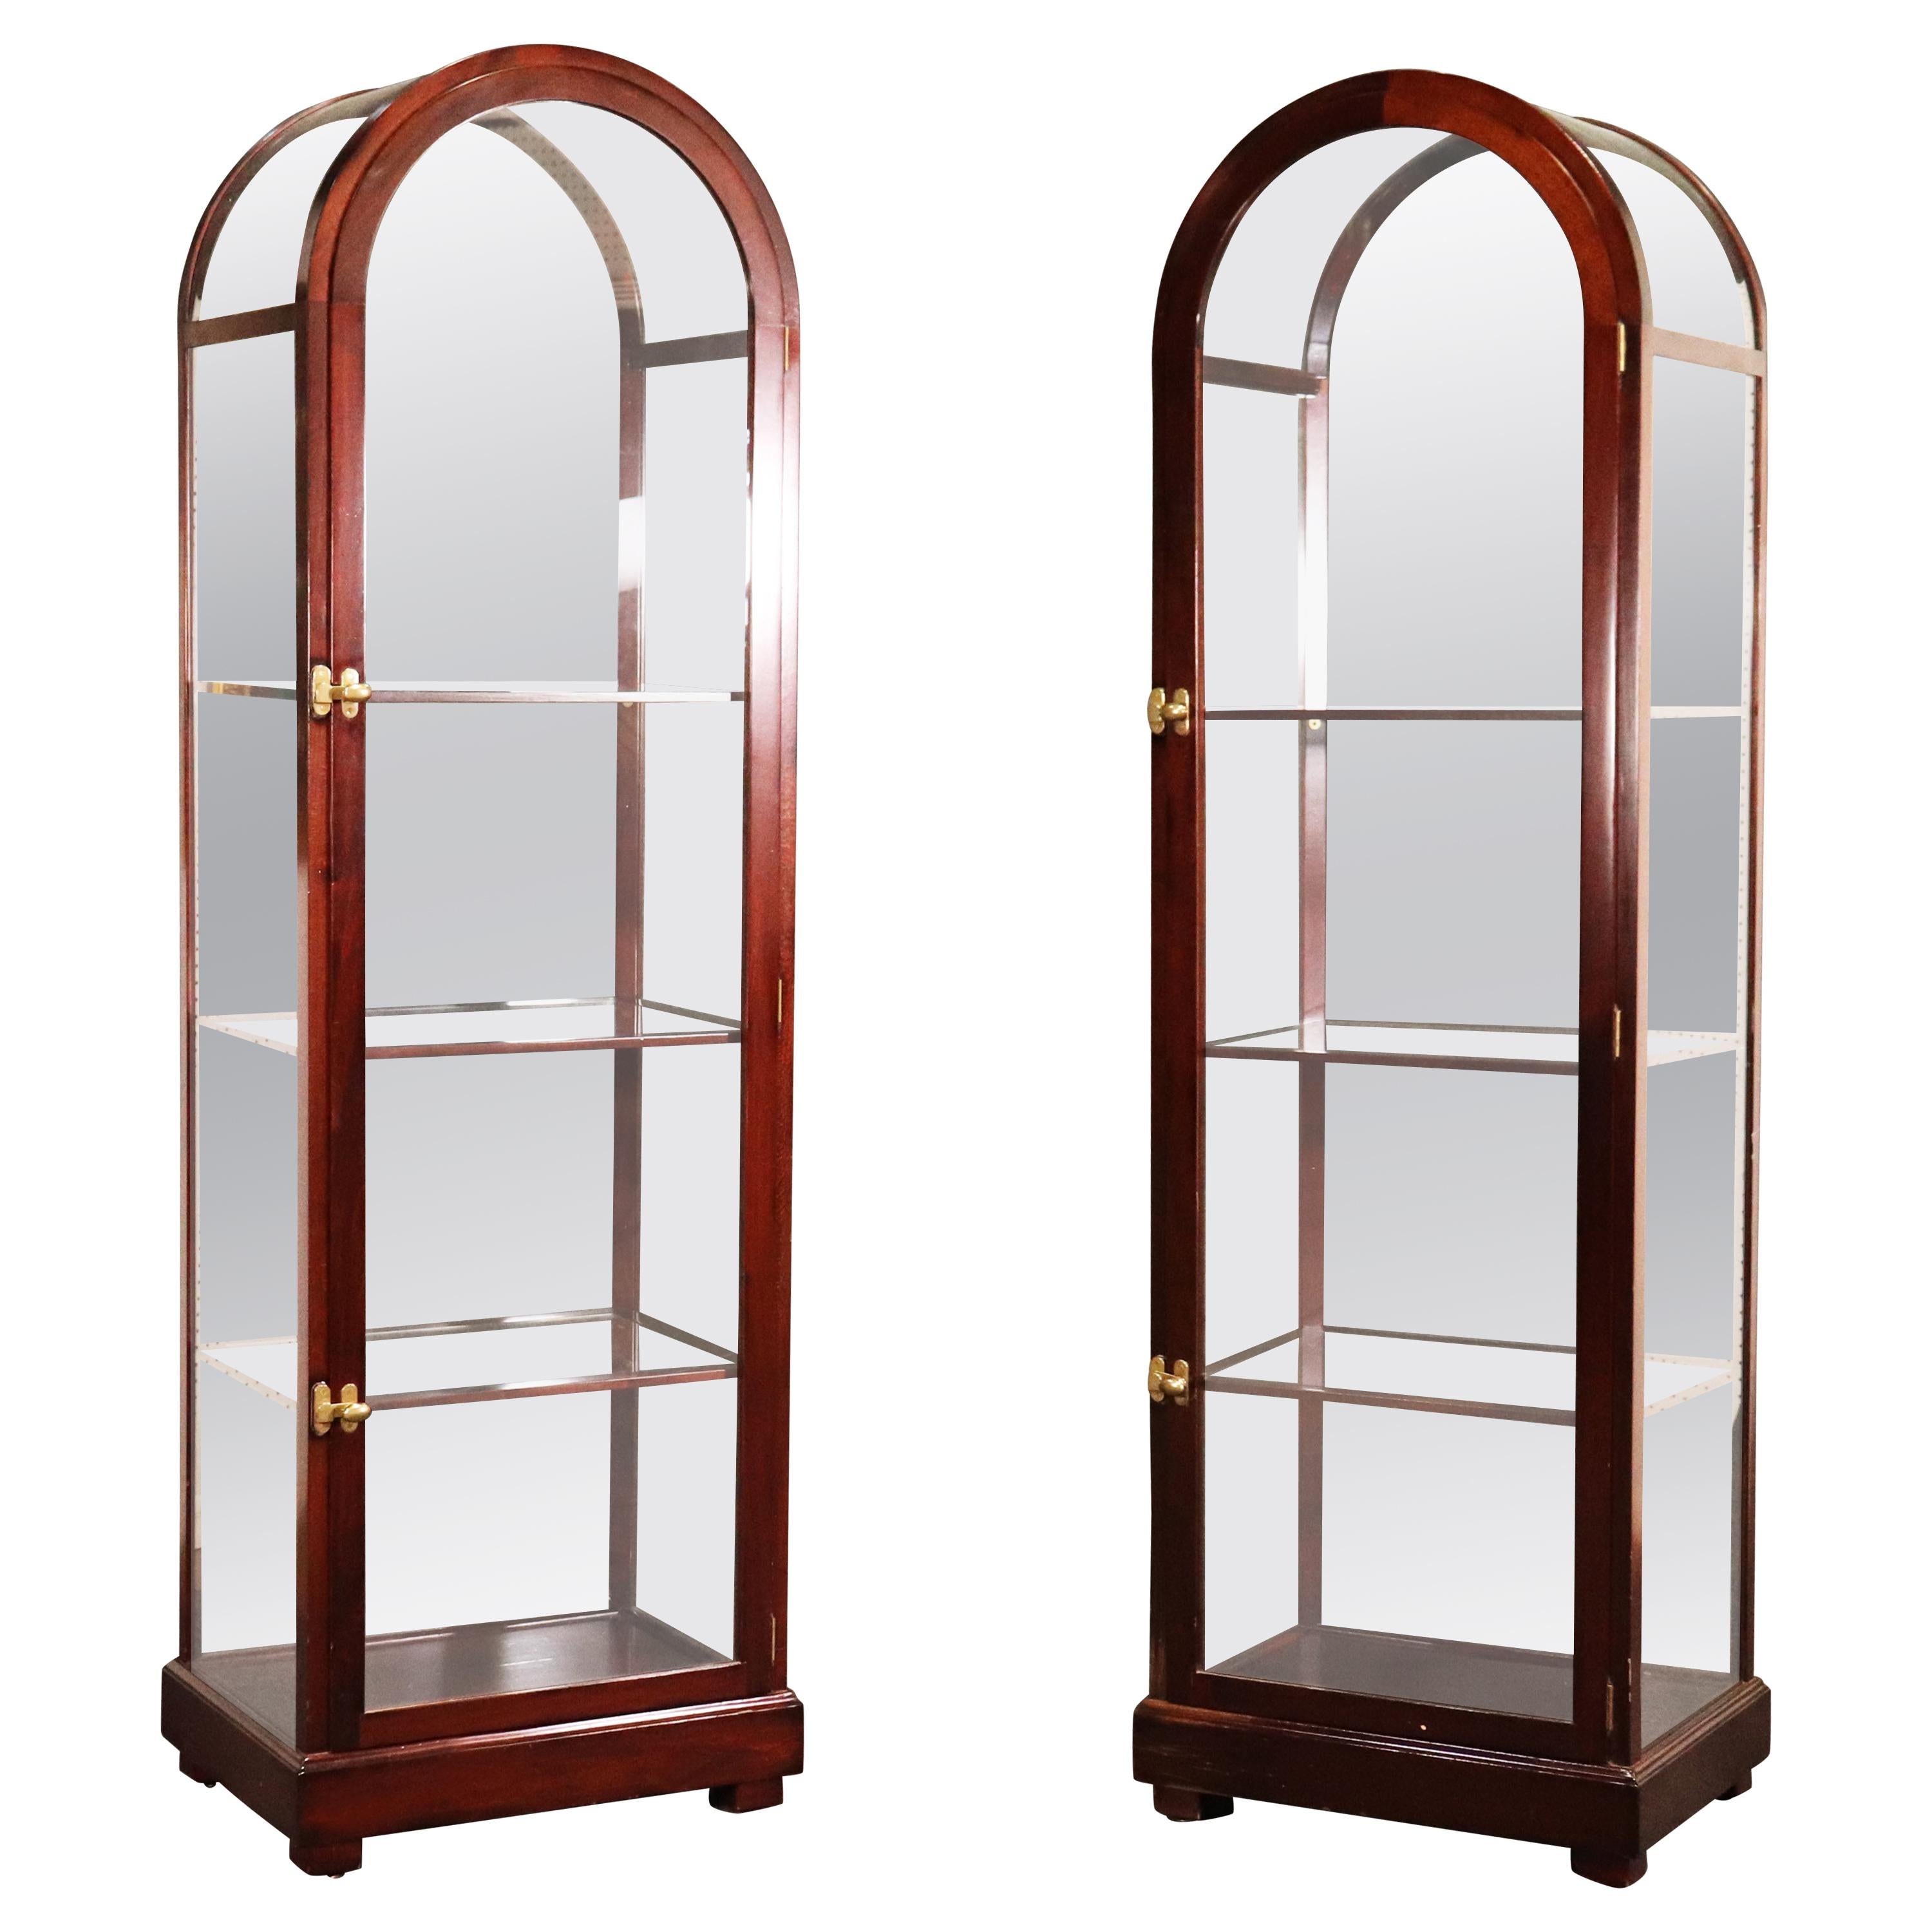 Pair of Mahogany Arched Narrow Glass Italian-Made Vitrine China Display Cabinets